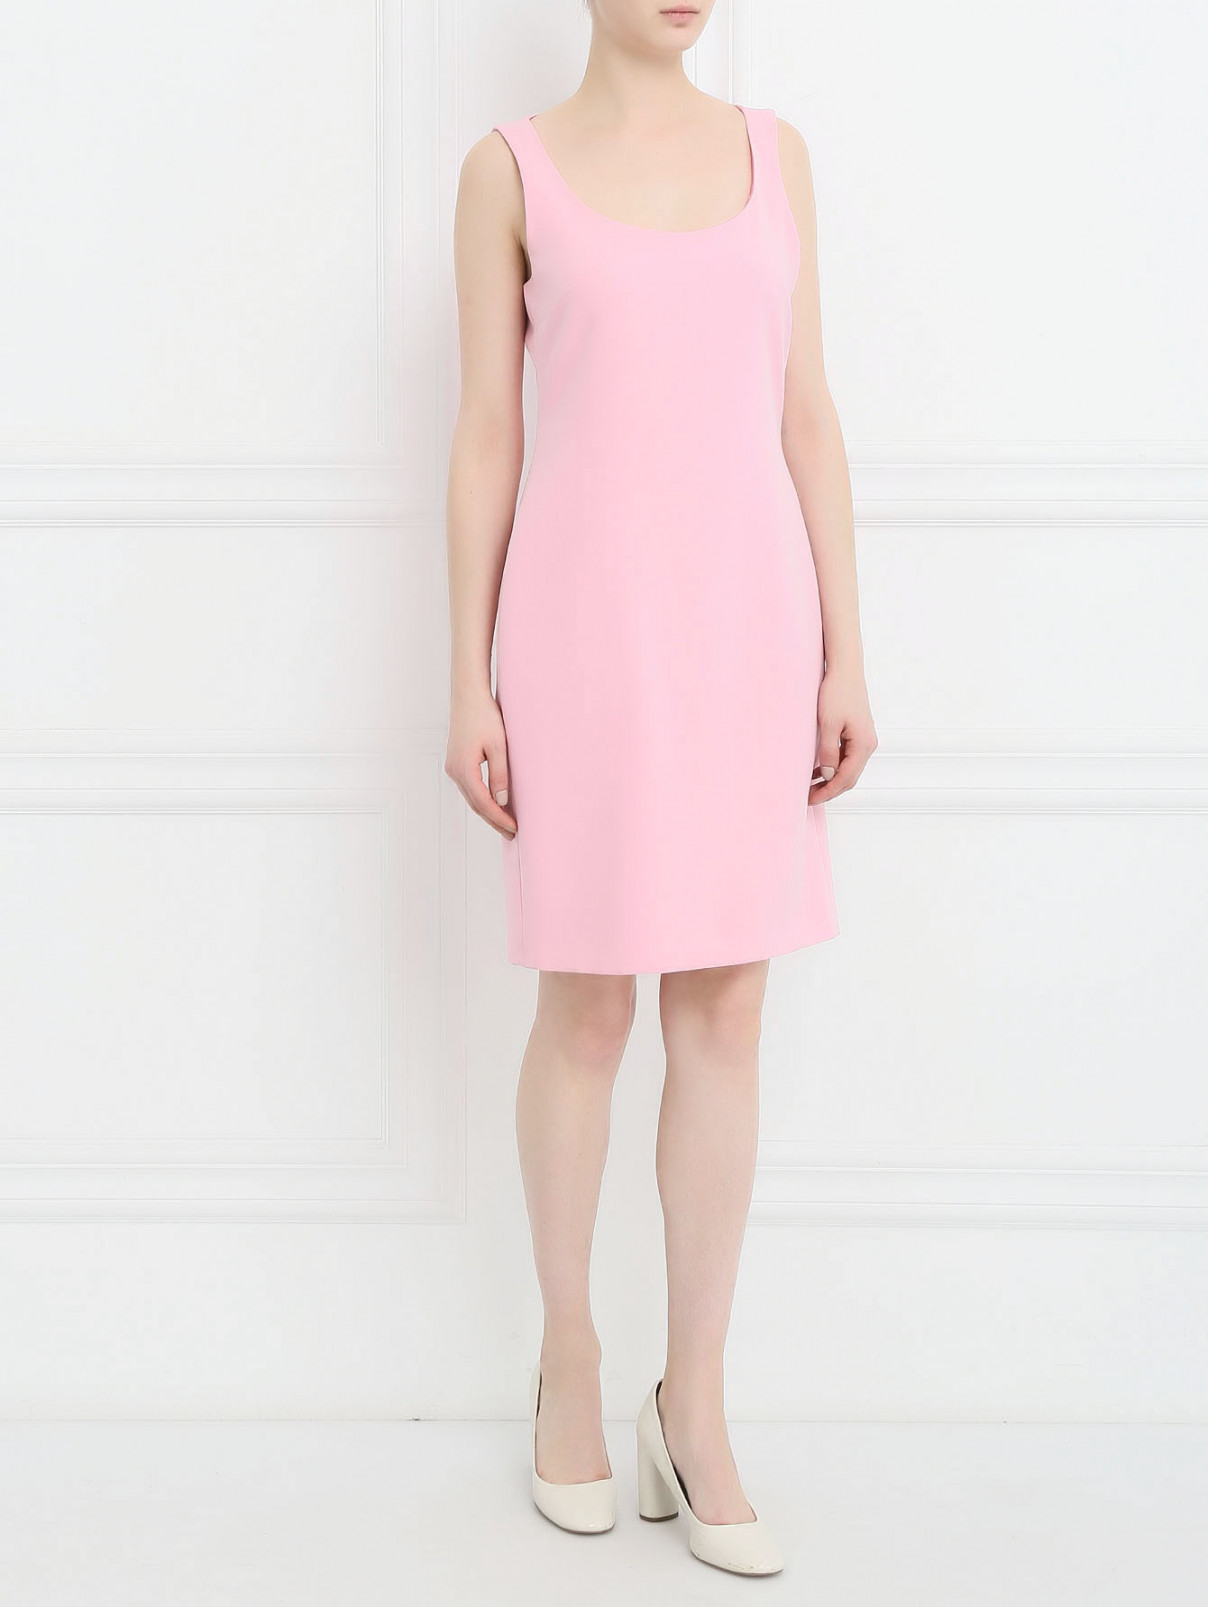 Платье-футляр без рукавов Moschino Cheap&Chic  –  Модель Общий вид  – Цвет:  Розовый